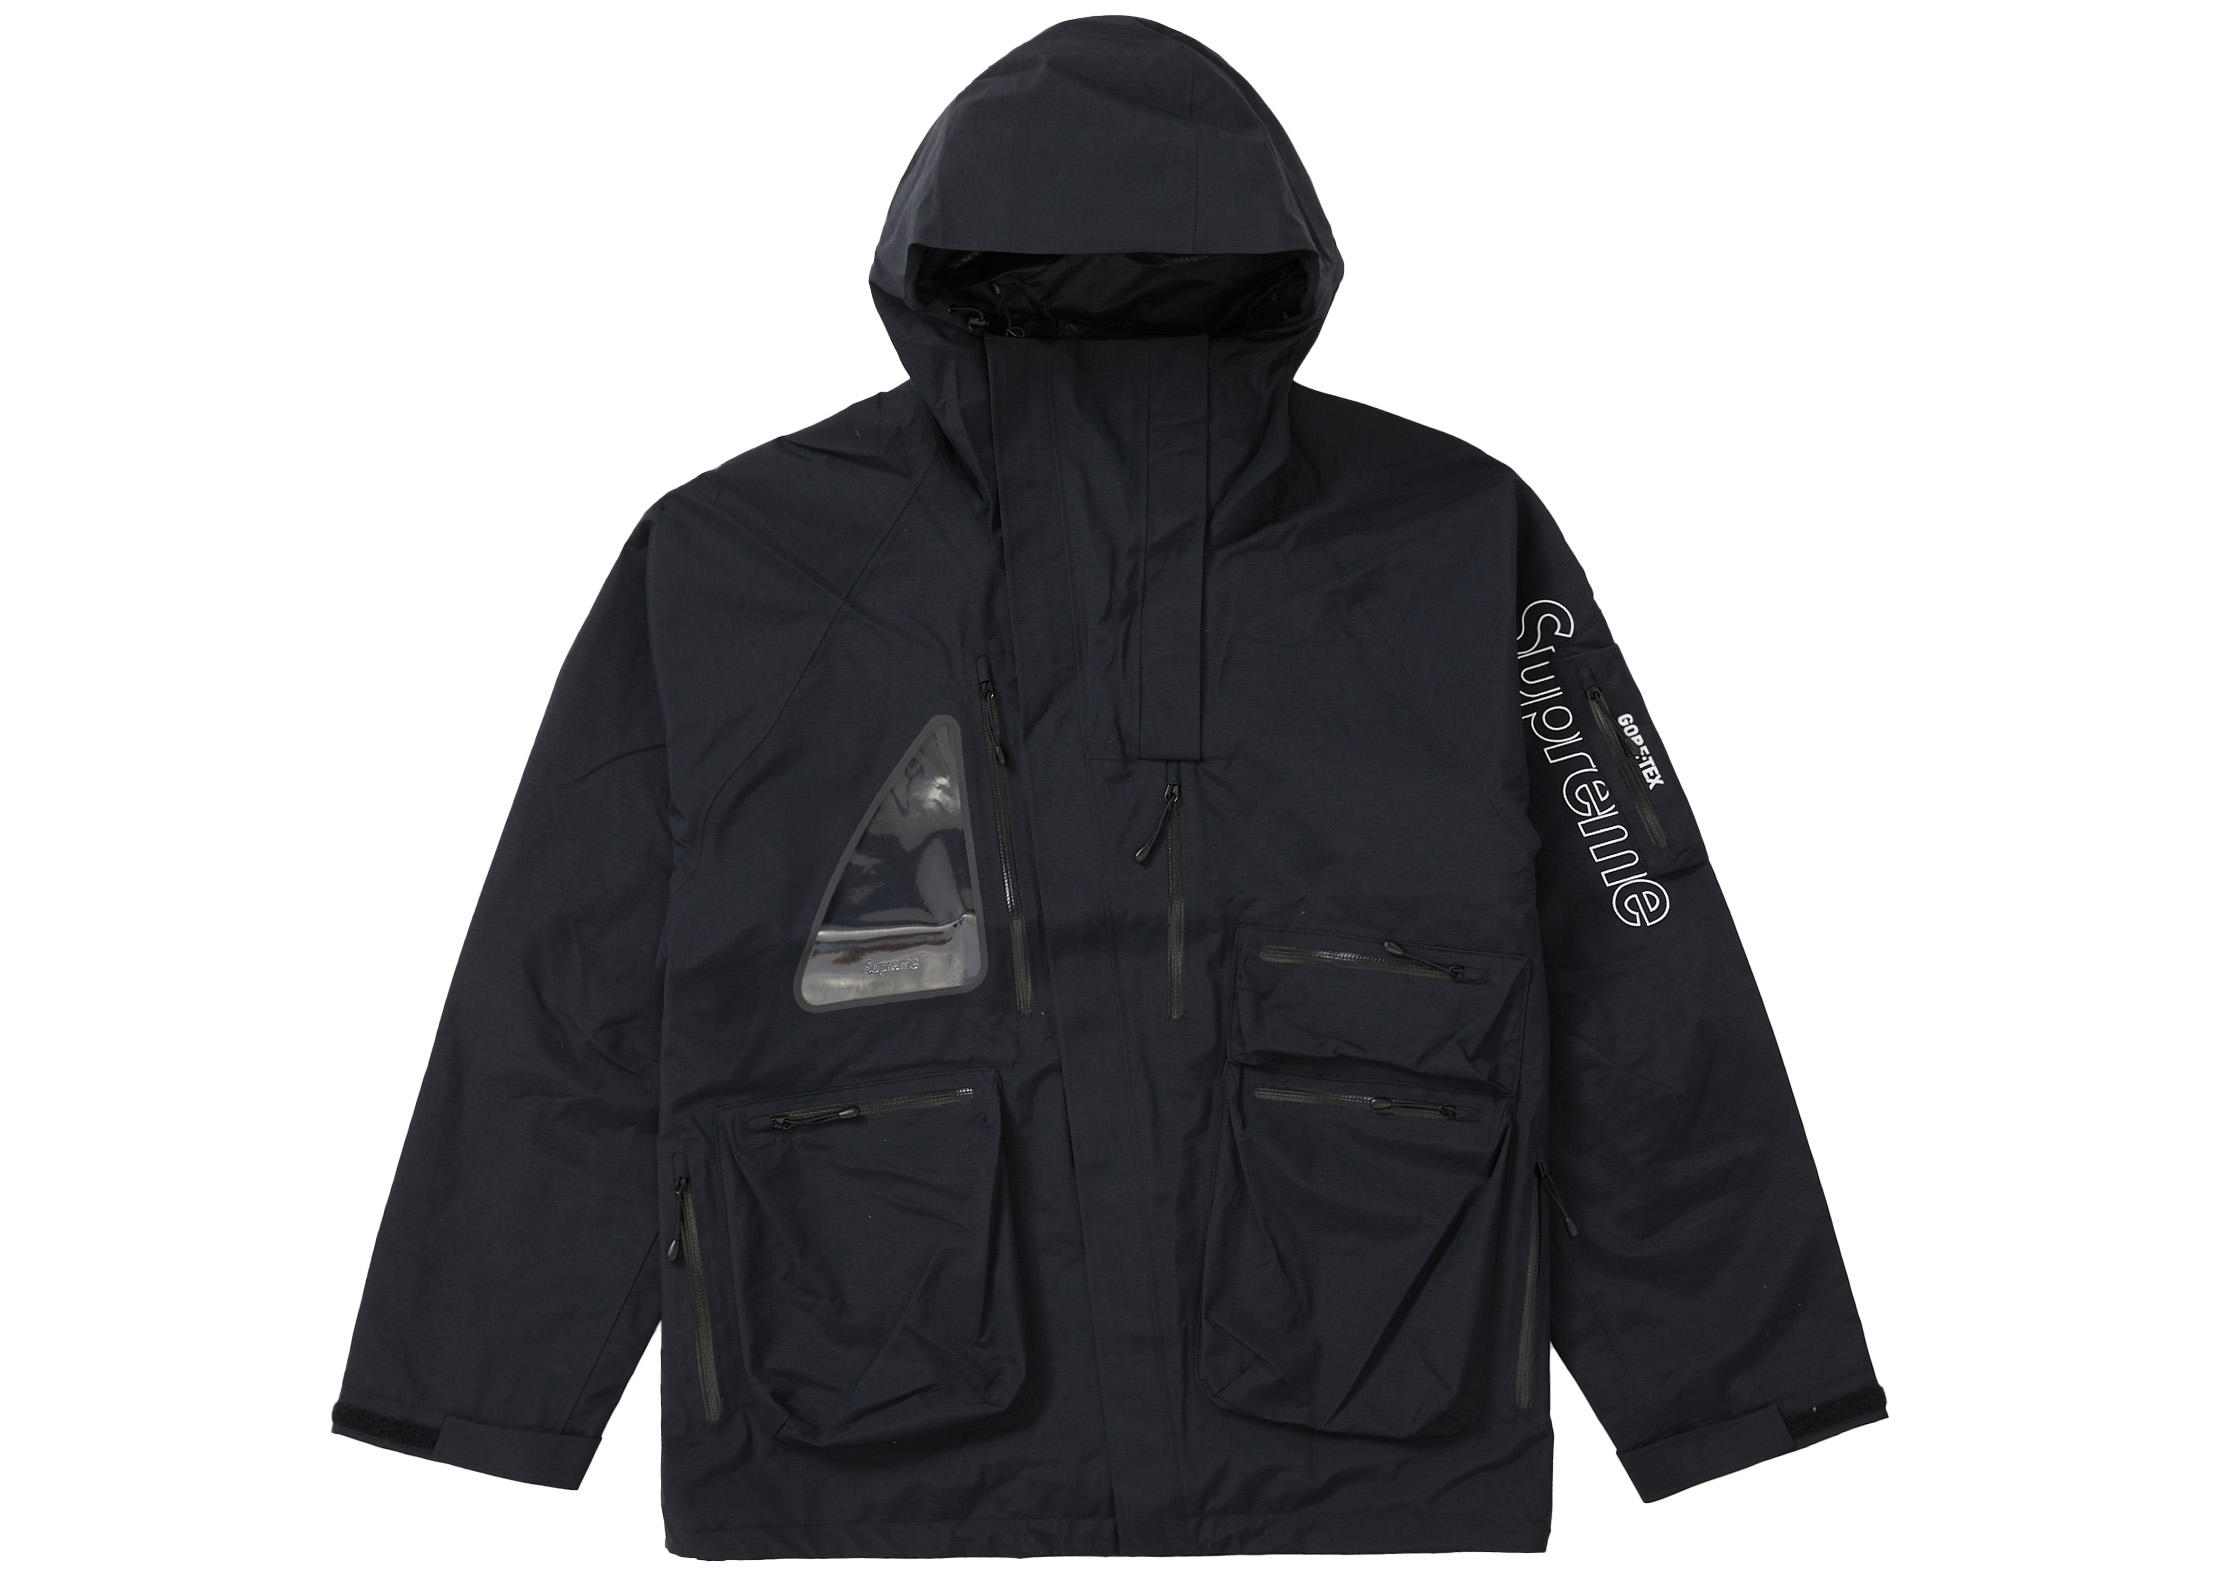 Supreme GORE-TEX Tech Shell Jacket Black - FW21 Men's - US